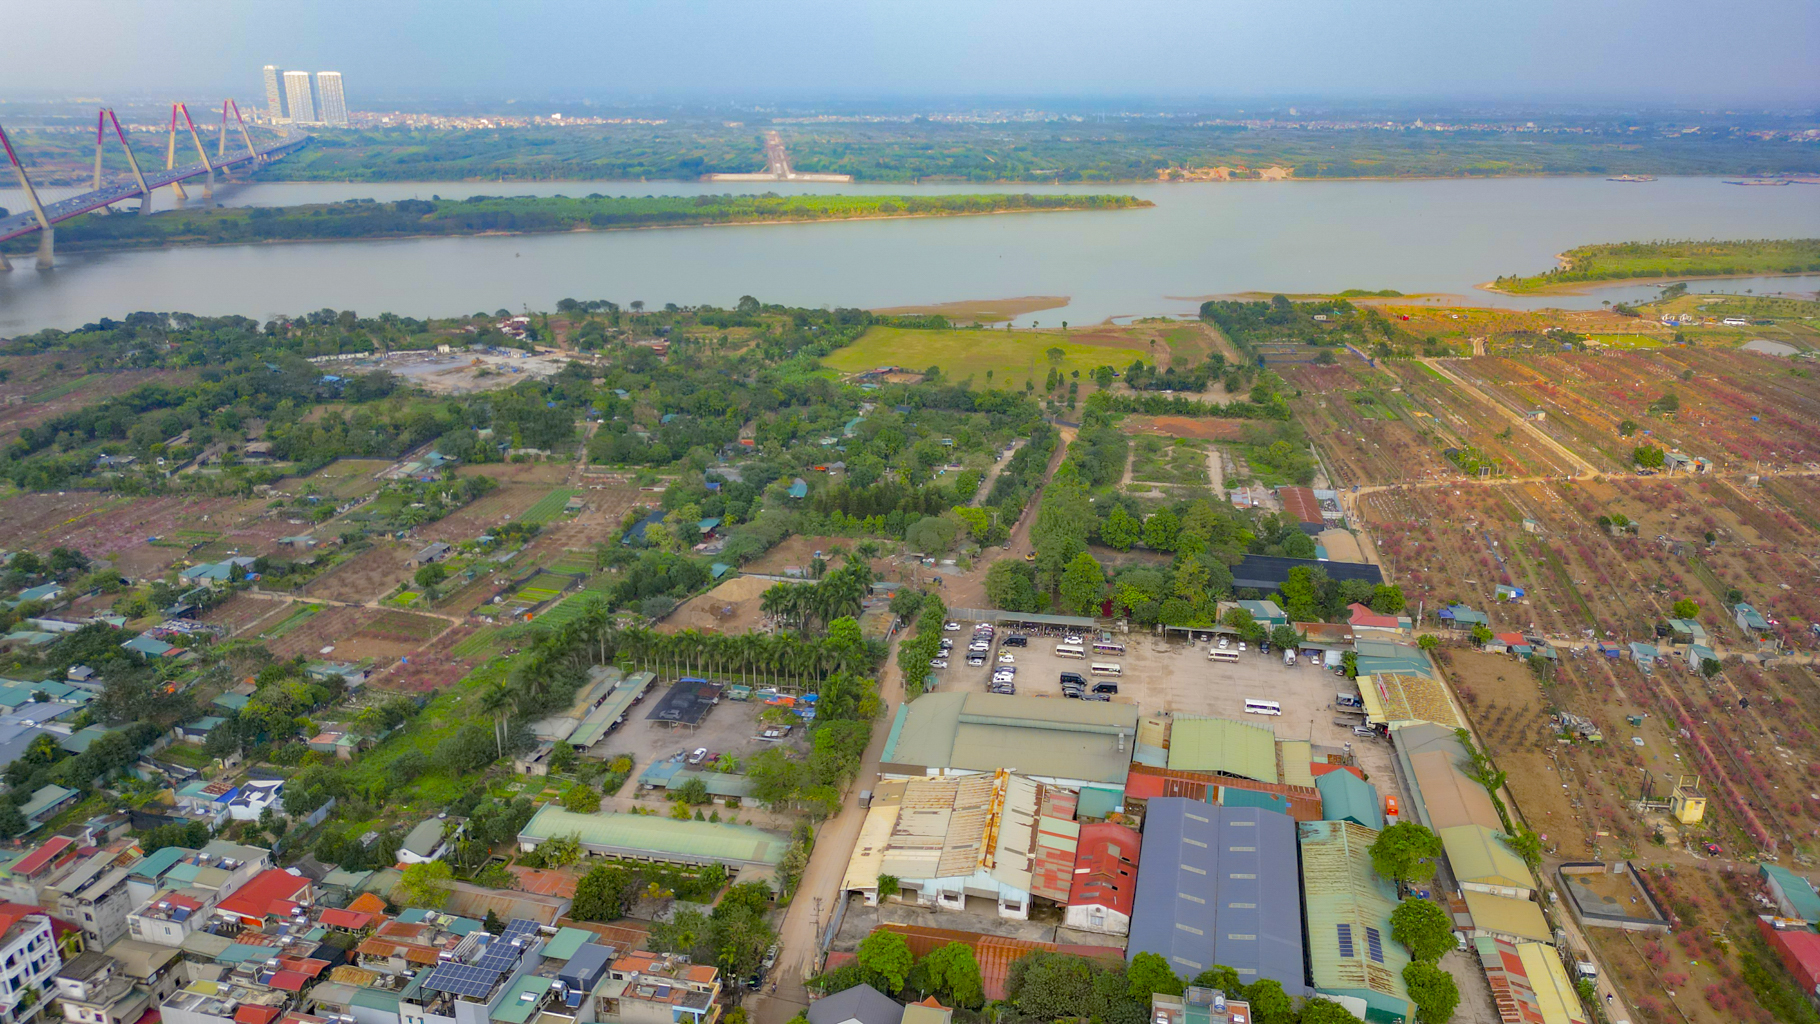 Quỹ đất lớn duy nhất còn sót lại ở Hà Nội, rộng bằng 8 quận nội thành, có nơi cách hồ Gươm chỉ vài phút đi xe - Ảnh 5.